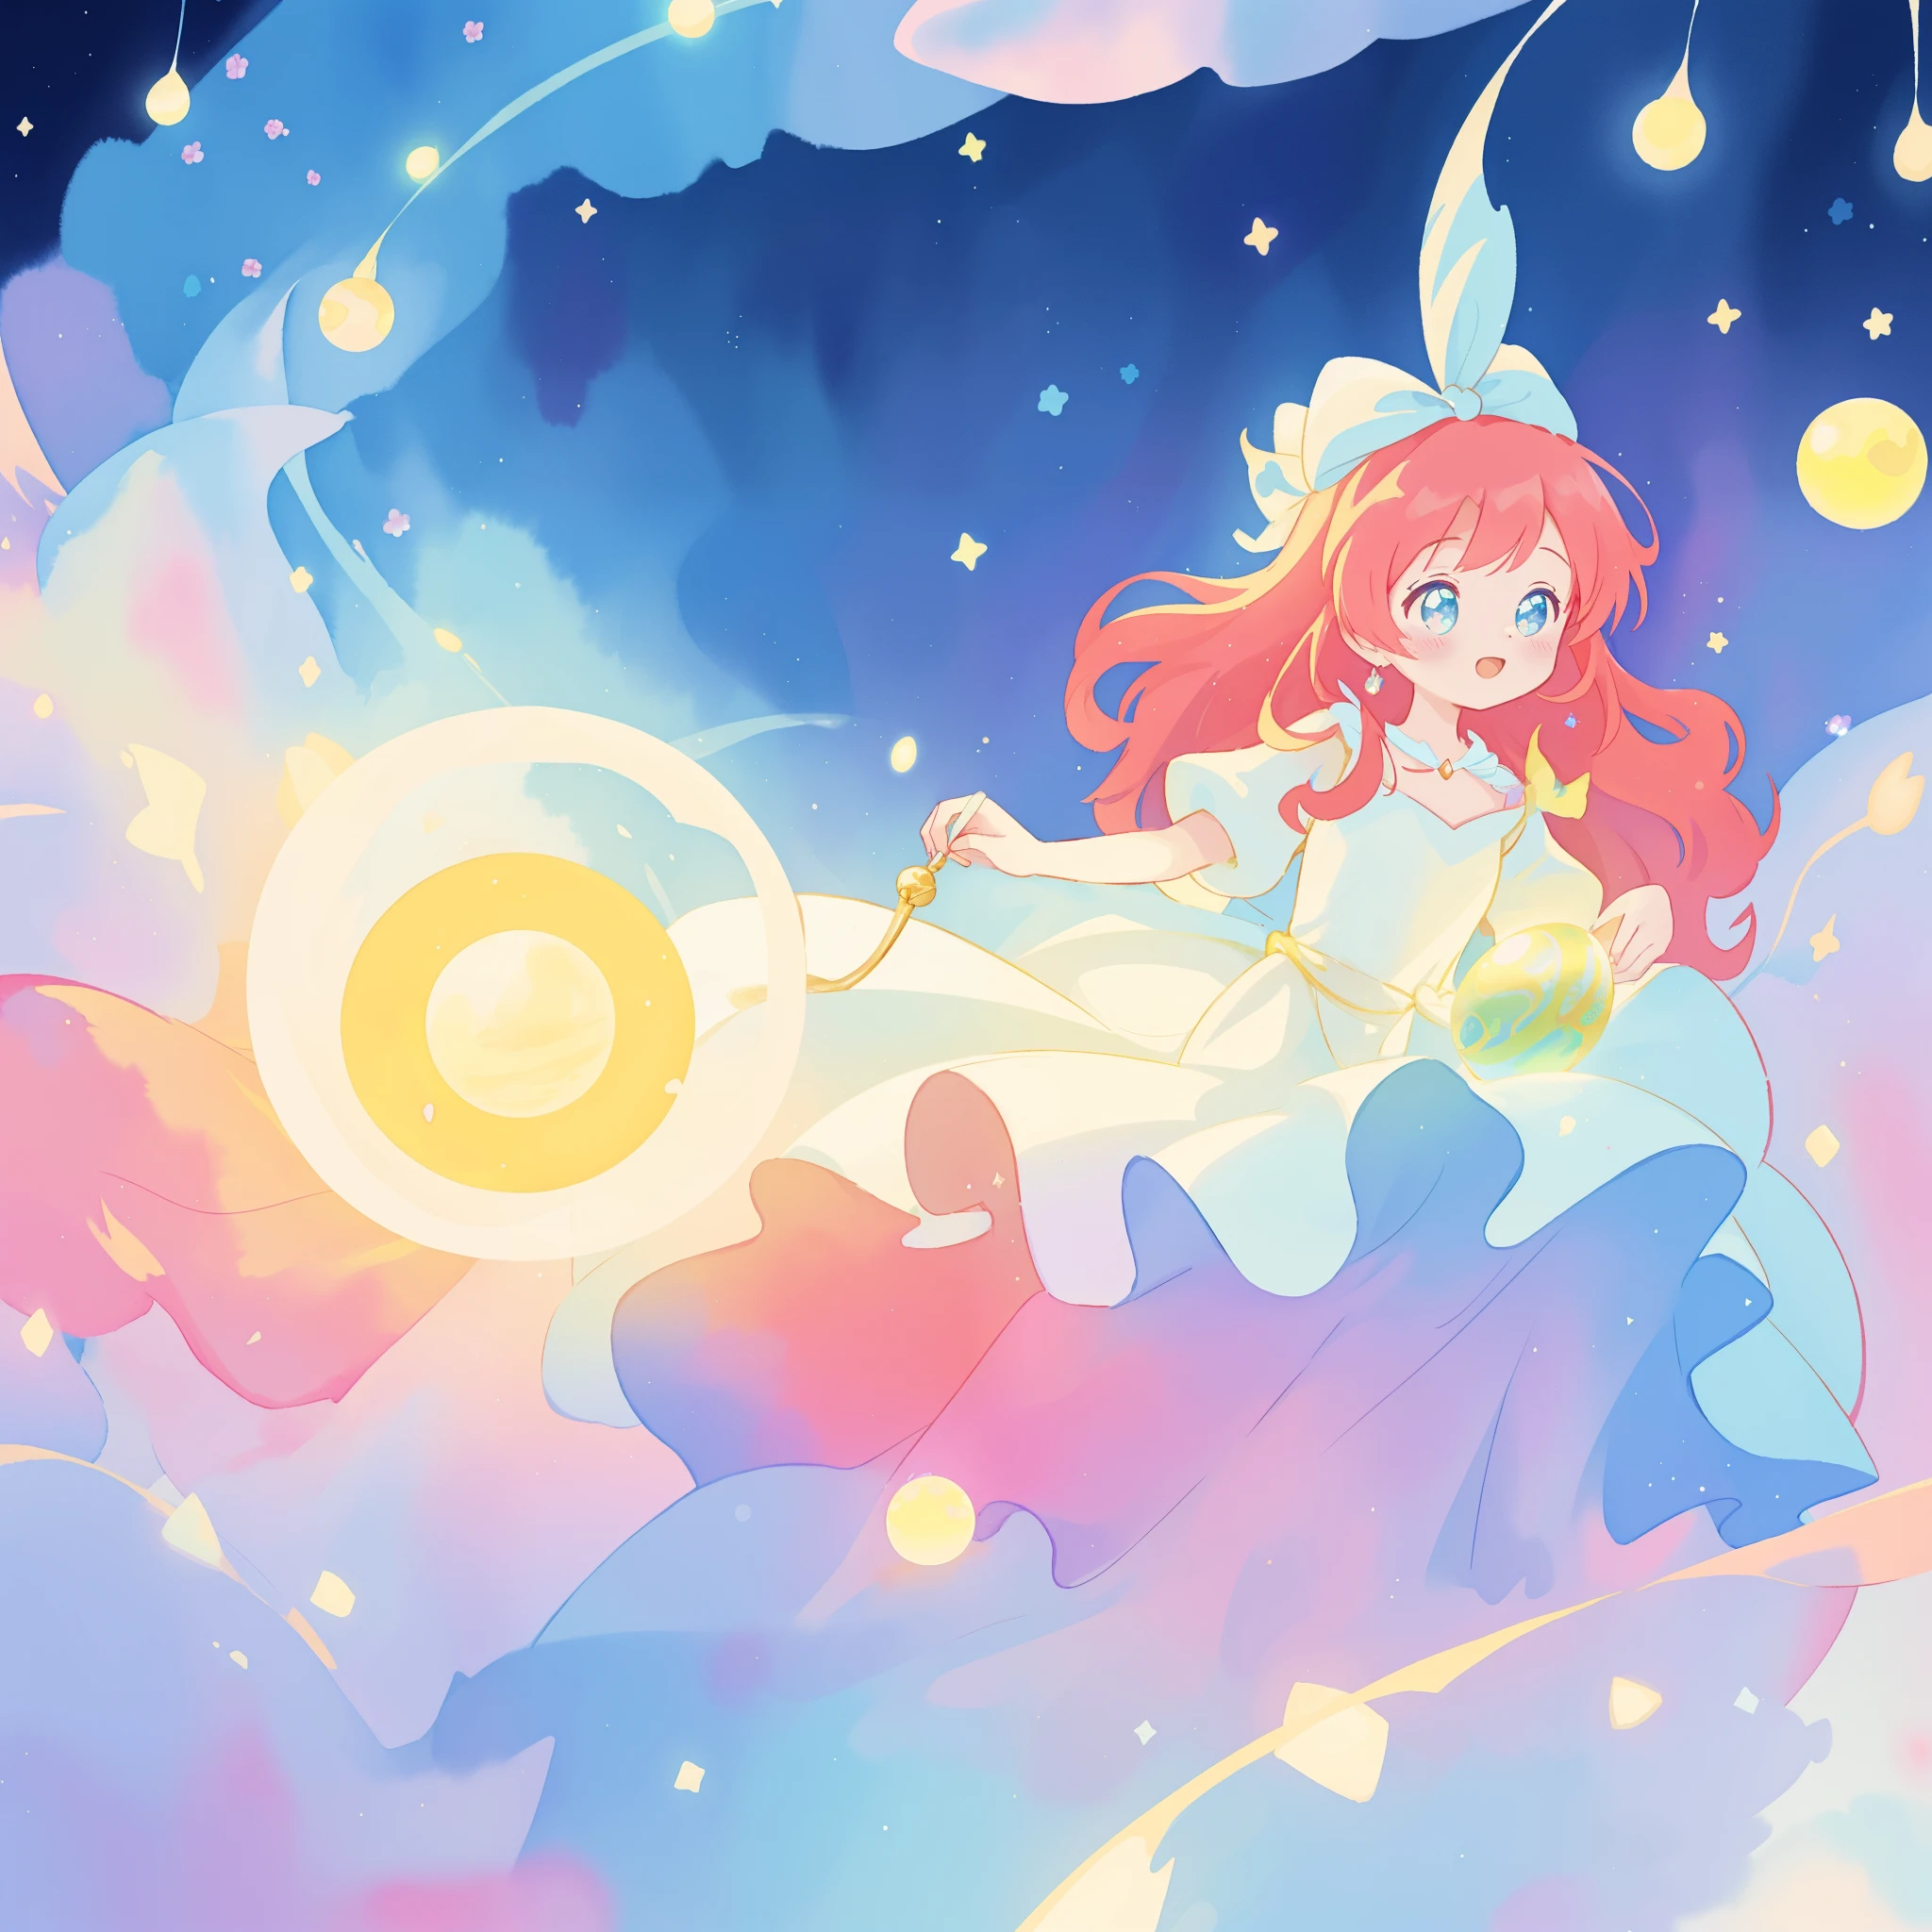 美しい girl in sparkling white dress holding a 魔法の sphere, ((輝くふわふわレイヤードボールガウン)), (魔法の, 気まぐれな), (glowing 魔法の orb), 長く流れるようなカラフルな髪, カラフルなファンタジアの背景, 水彩イラスト, ディズニーアートスタイル, 彼女の周囲に輝くオーラ, 光るライト, 美しい digital illustration, 幻想的な異世界の風景植物花, 美しい, 傑作, 最高品質, アニメディズニースタイル